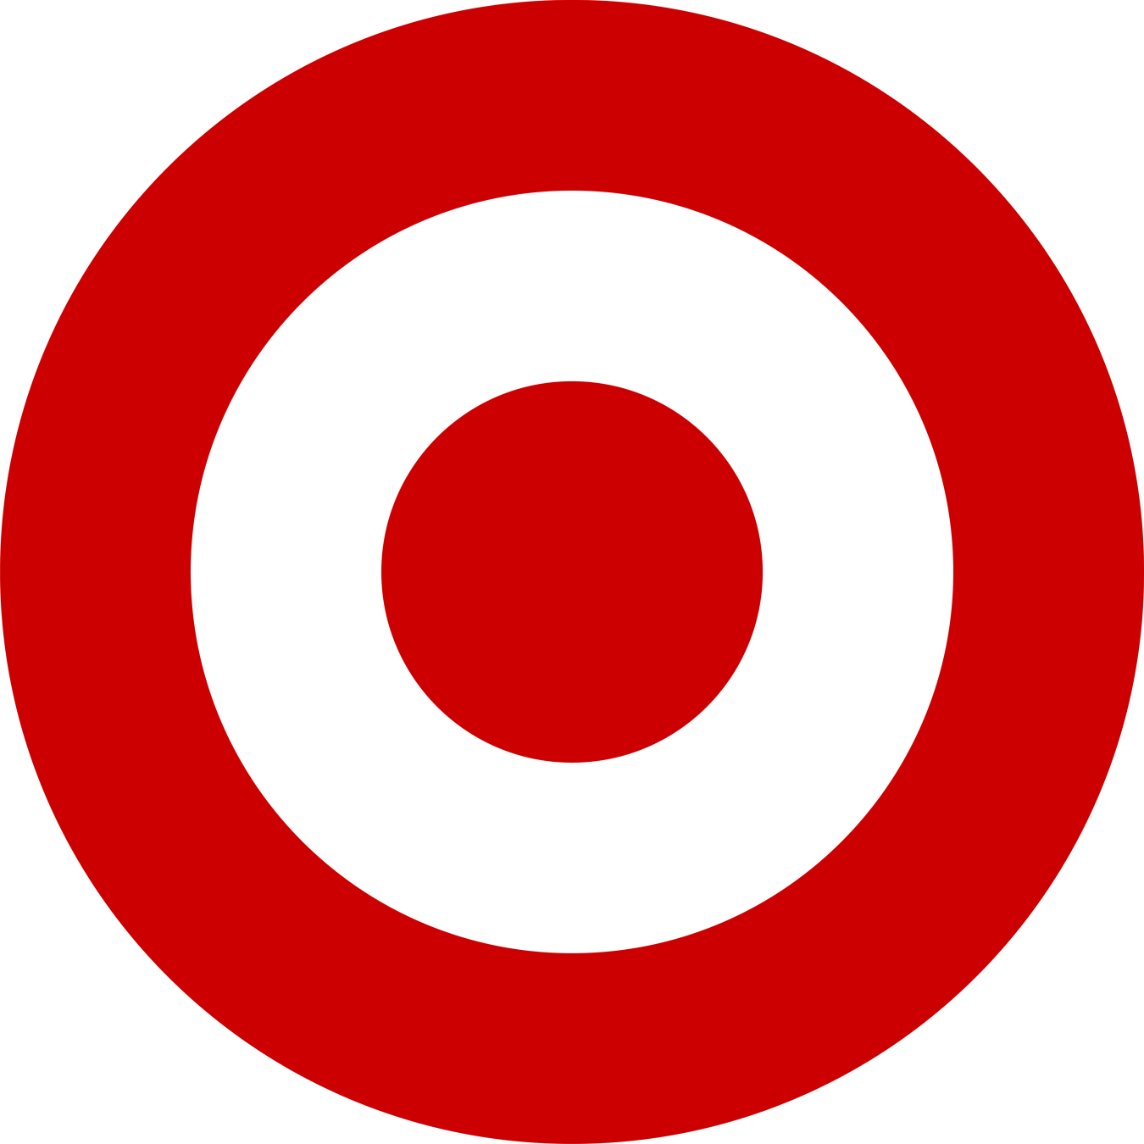 YMMV 20% off storewide coupon through Target Circle